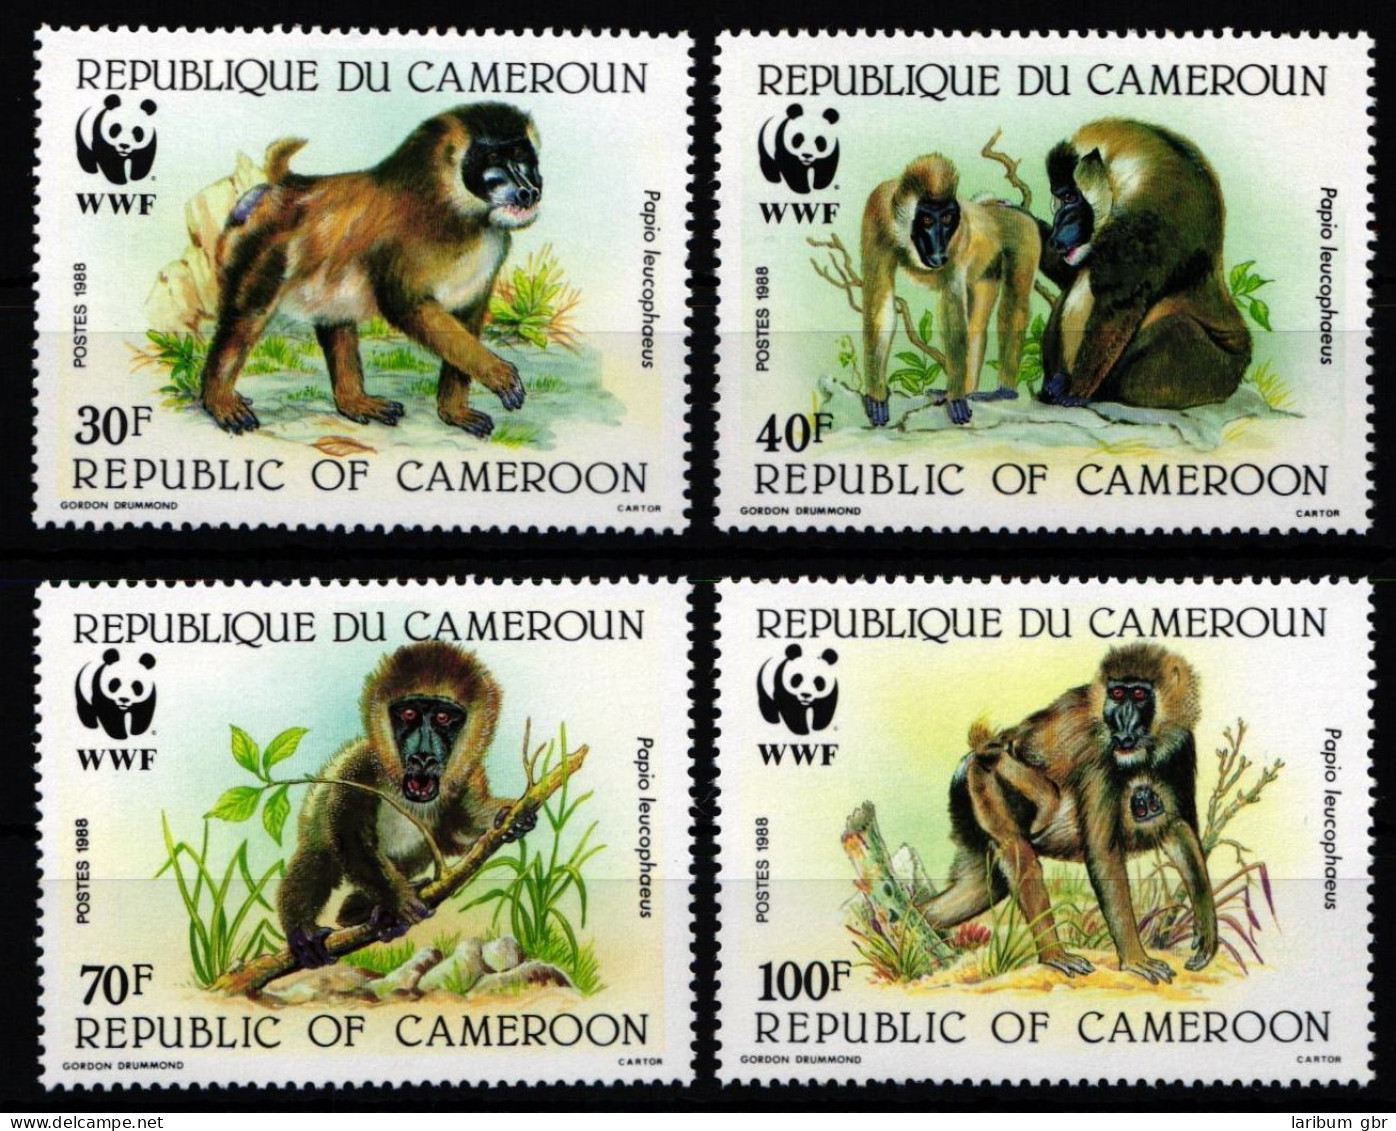 Kamerun 1155-1158 Postfrisch #JZ566 - Kameroen (1960-...)